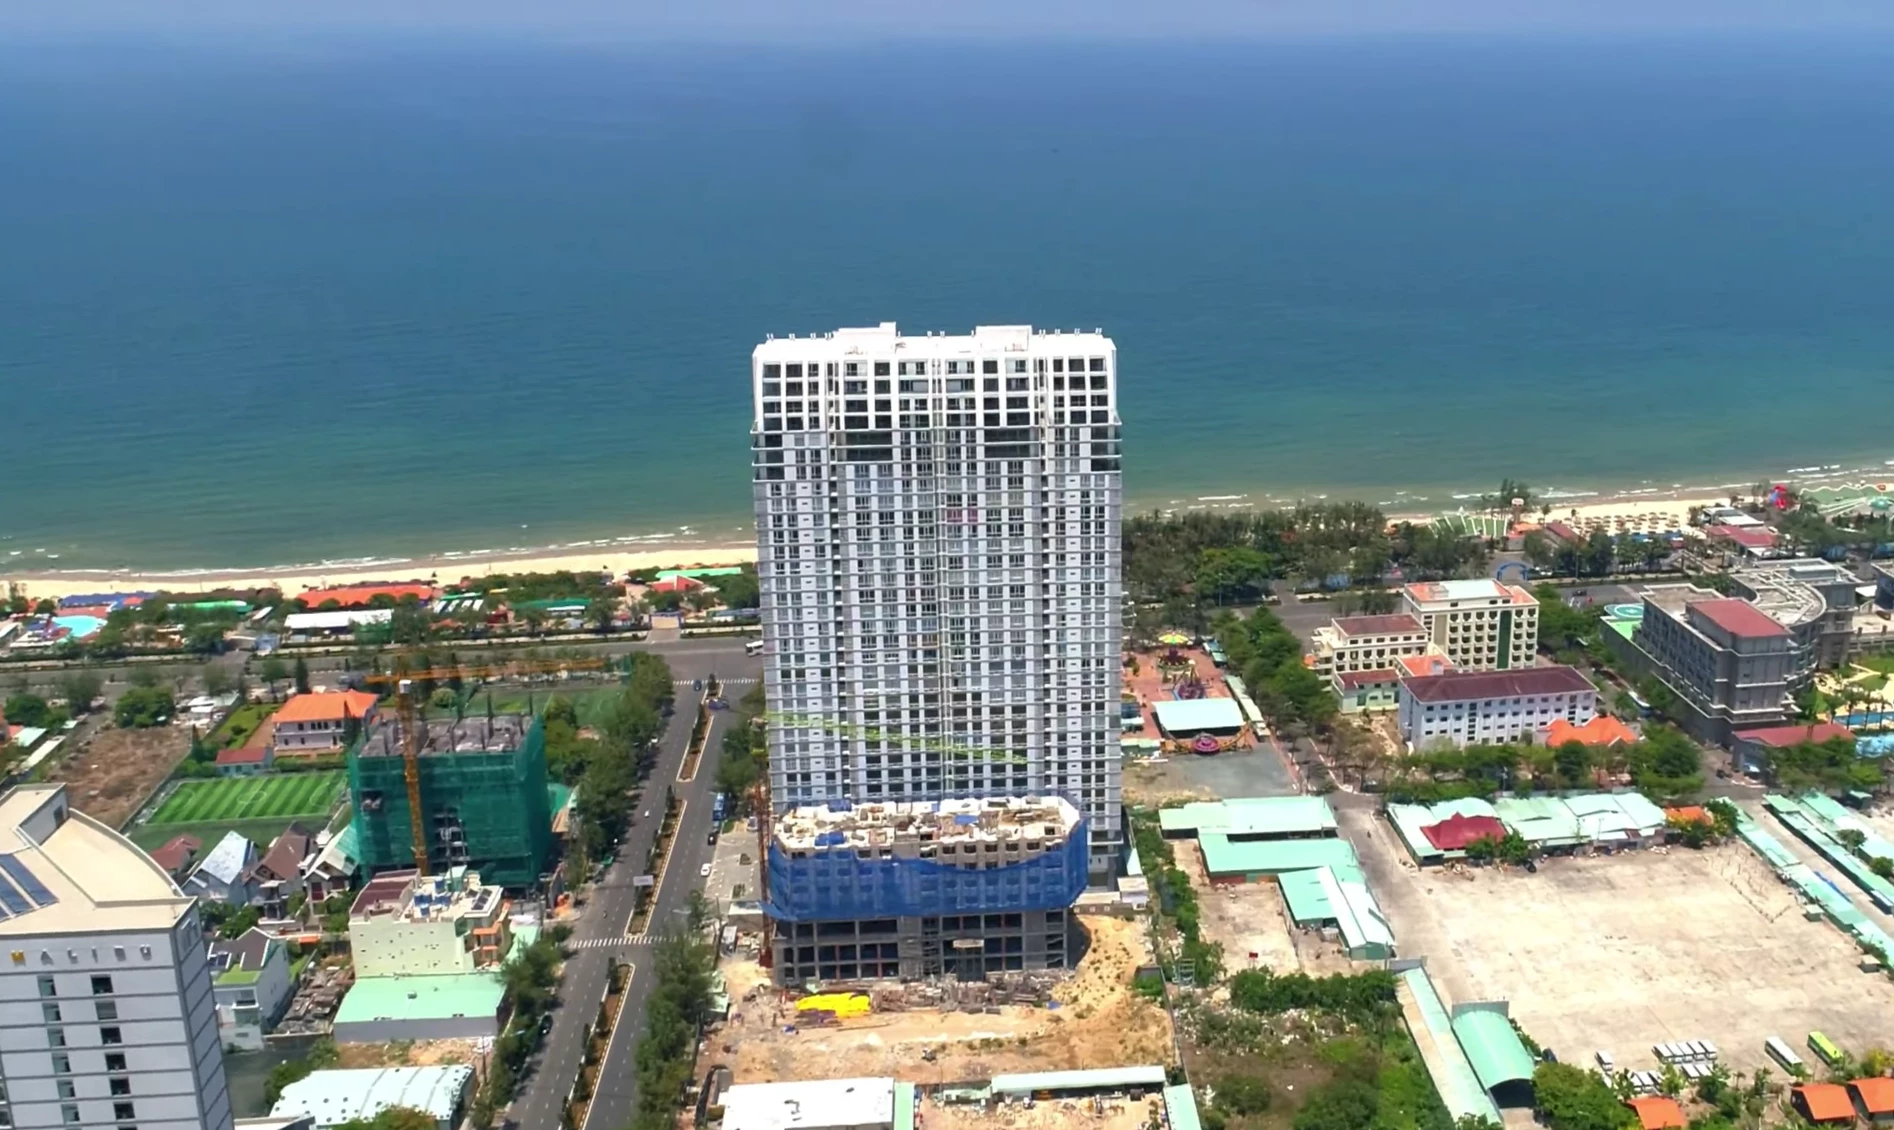 Quy hoạch xây dựng được Thủ tướng phê duyệt yêu cầu dưới 18 tầng, nhưng Dự án Sơn Thịnh 2 lại vượt 15 tầng.